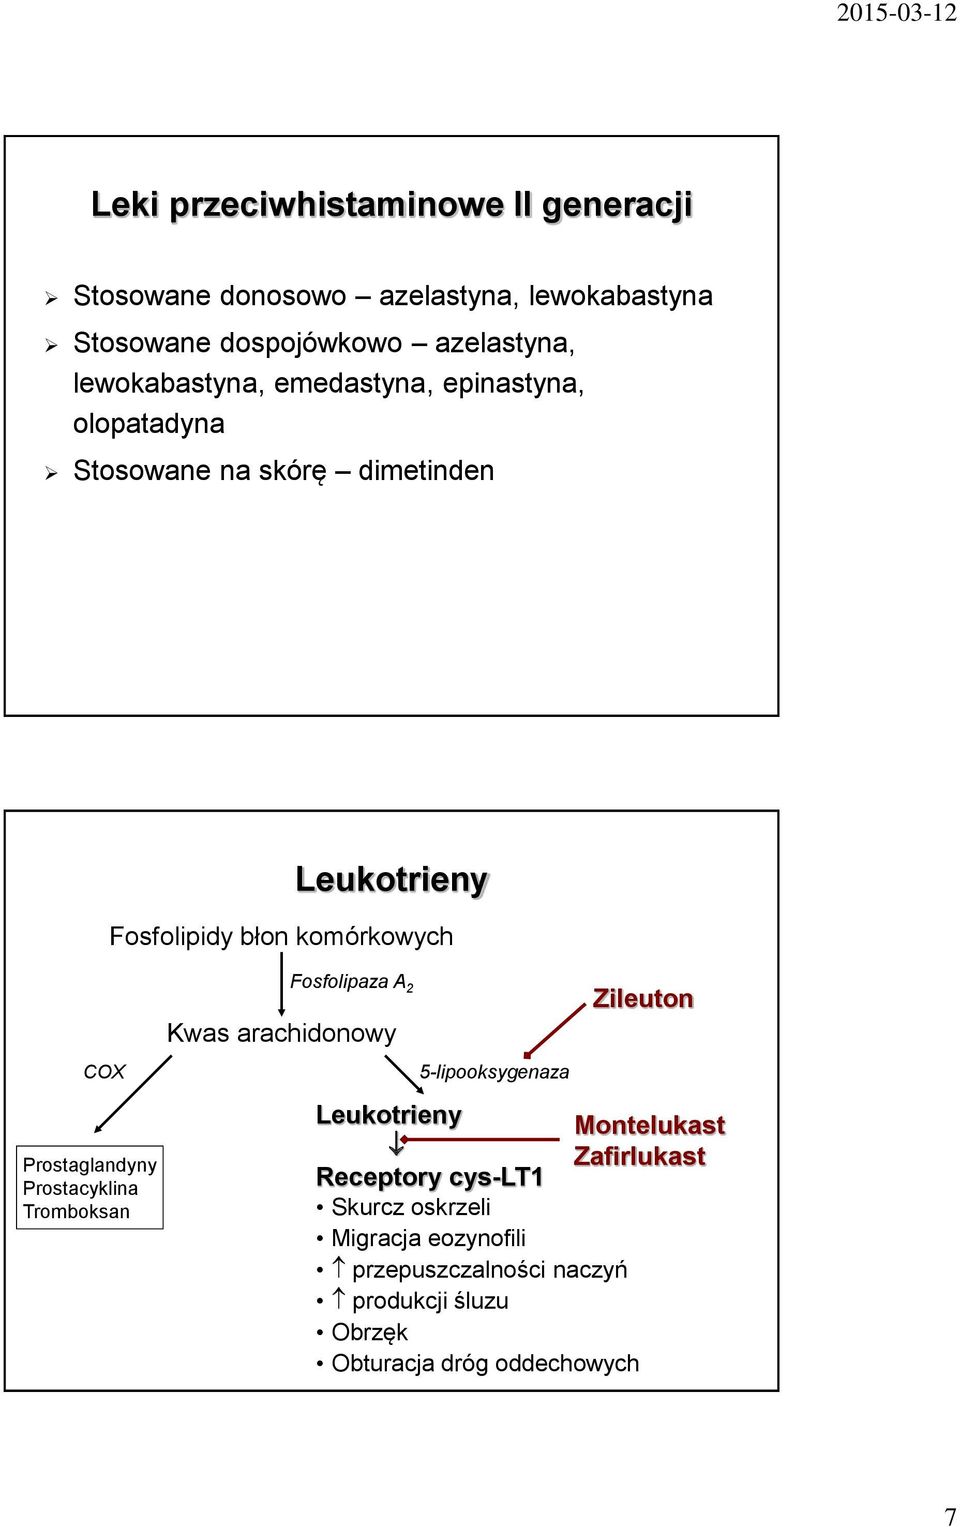 Fosfolipaza A 2 Kwas arachidonowy Zileuton COX Prostaglandyny Prostacyklina Tromboksan 5-lipooksygenaza Leukotrieny Montelukast